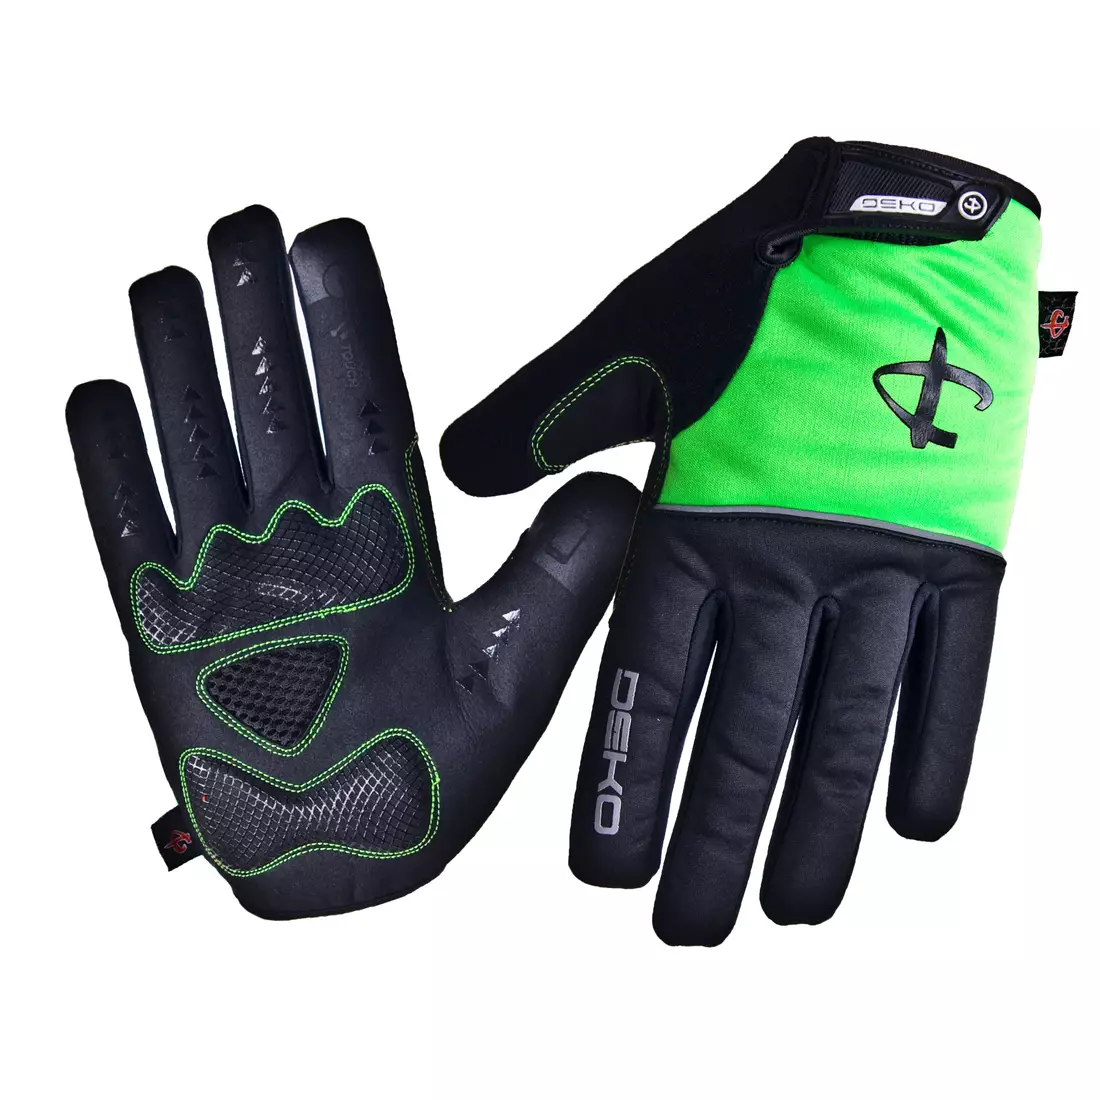 Zimné cyklistické rukavice DEKO ROST čierno-fluor zelené DKWG-0715-006A